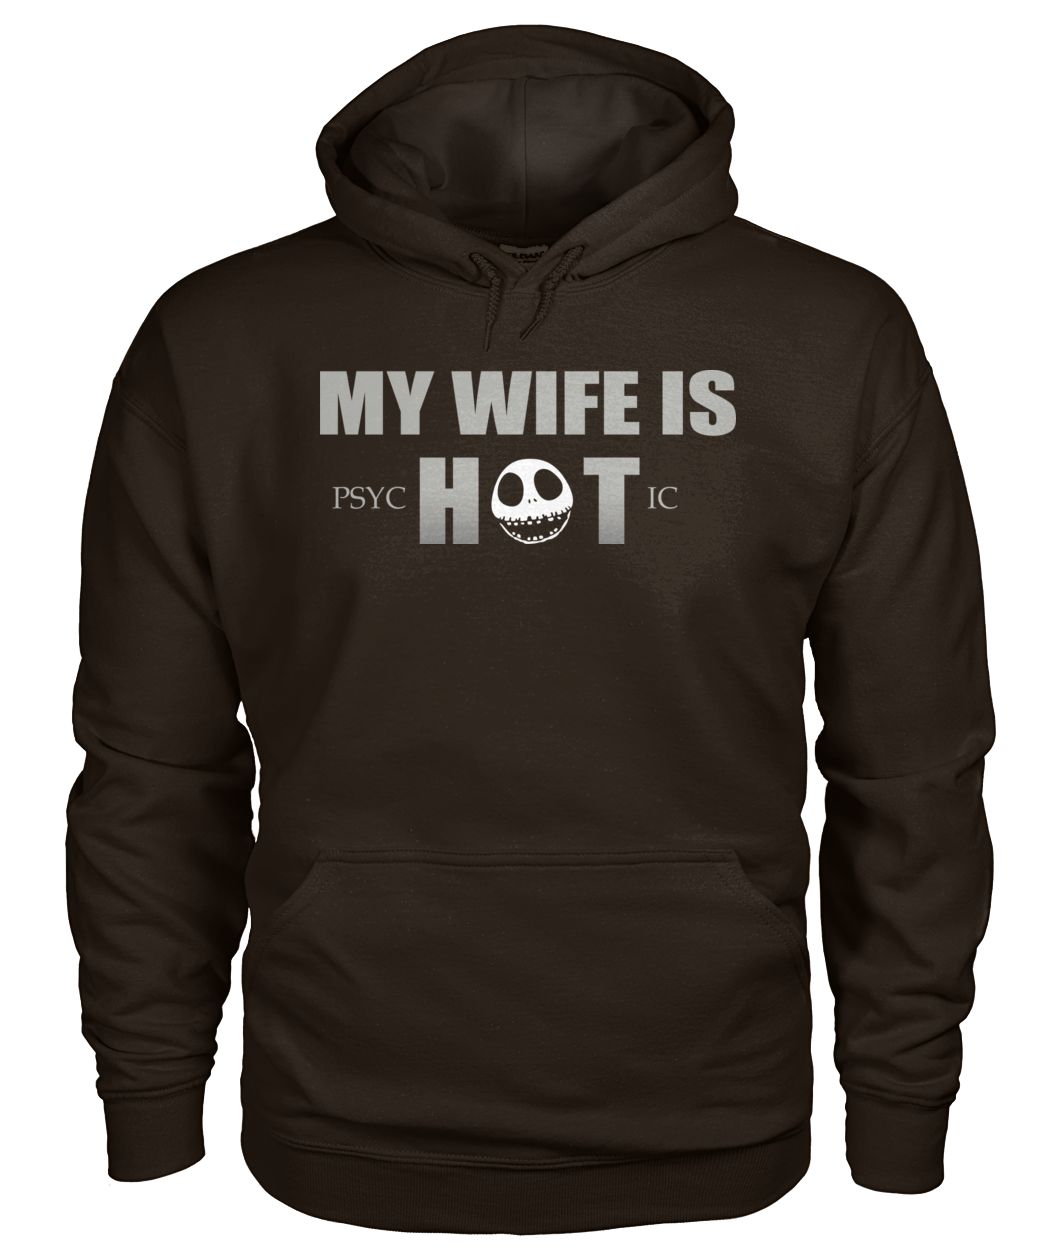 My wife is psychotic gildan hoodie